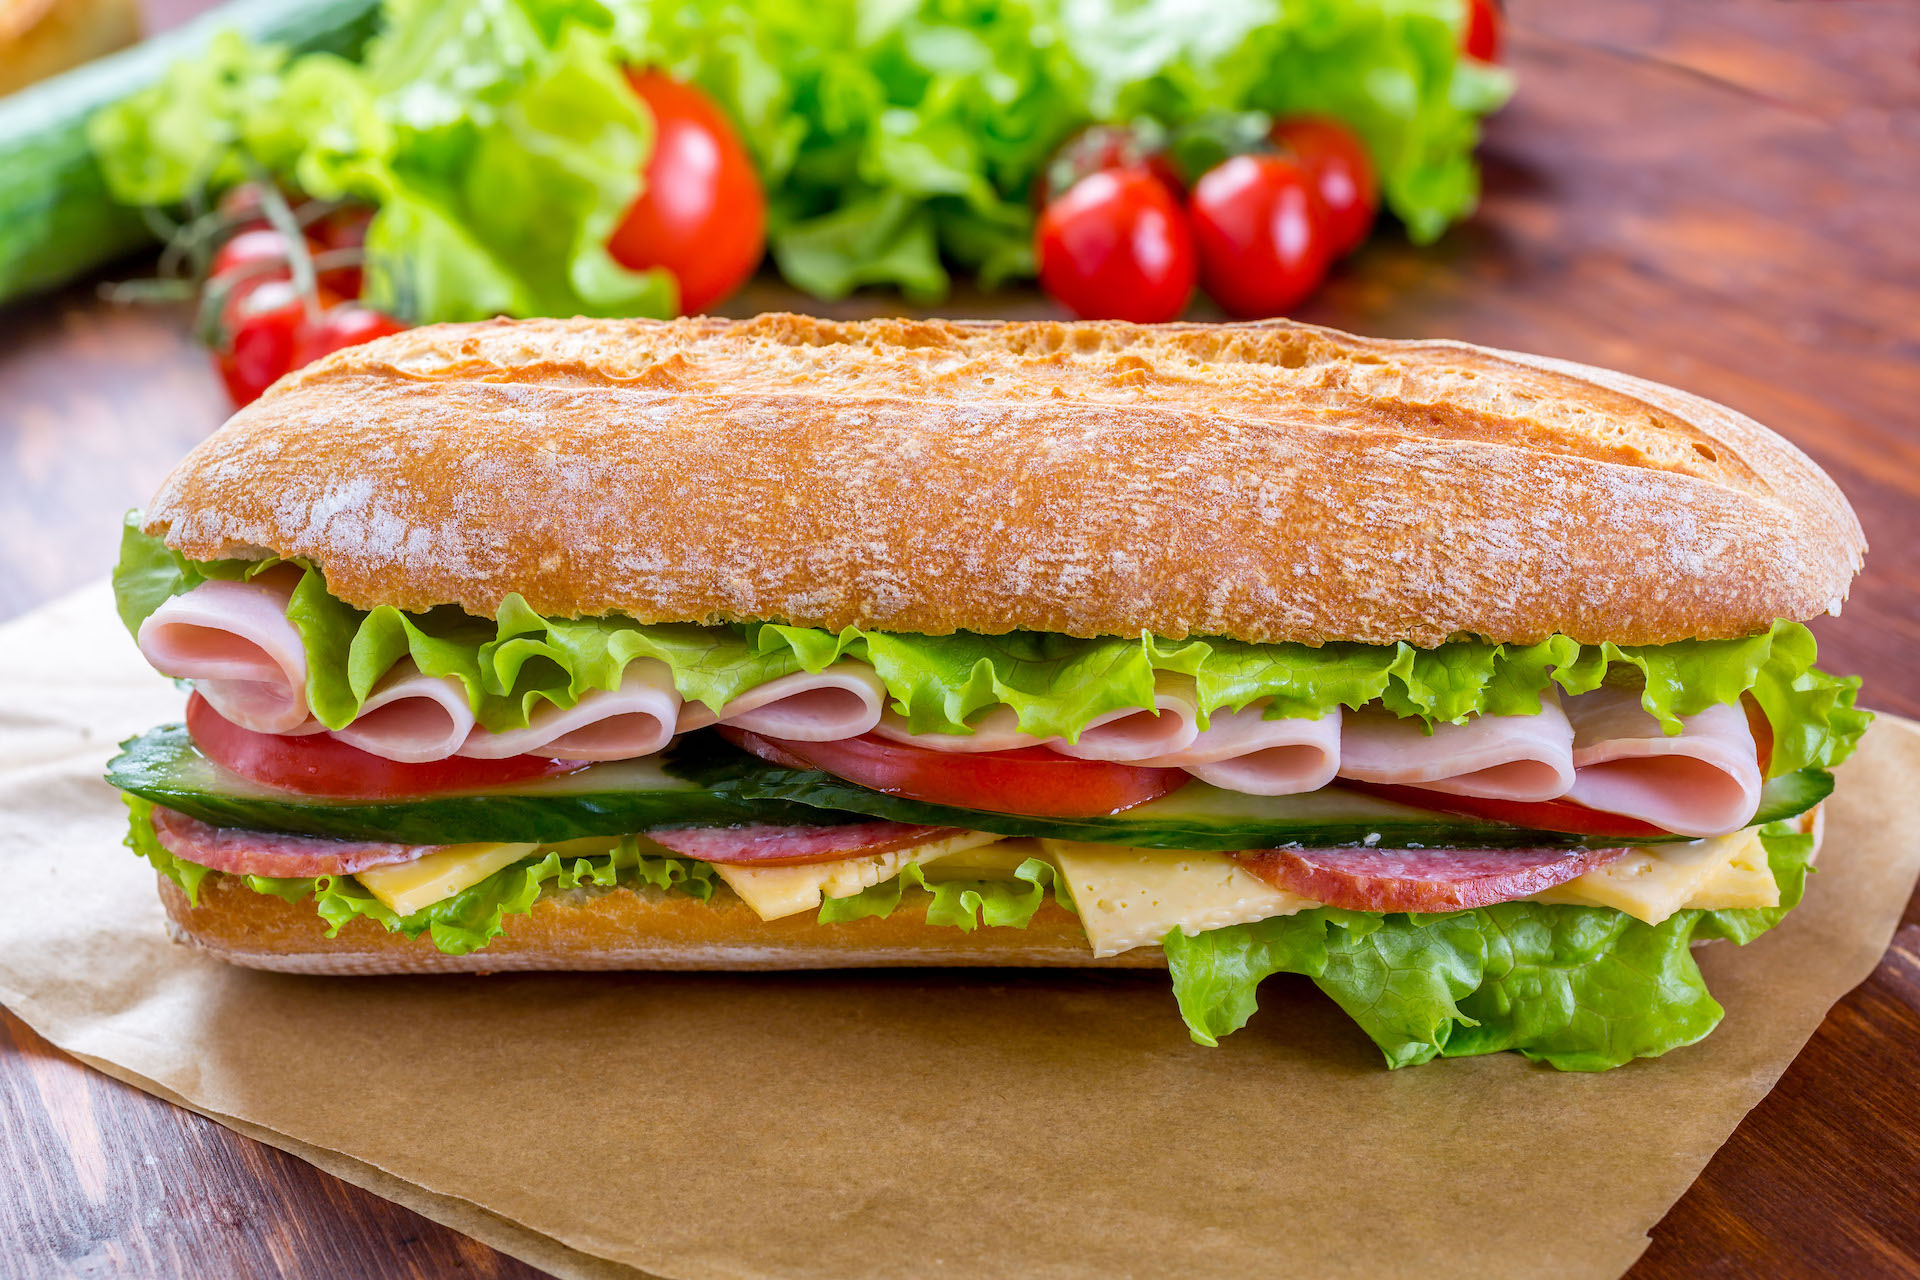 Baguete é perfeita para os sanduíches frios / GB Imagem